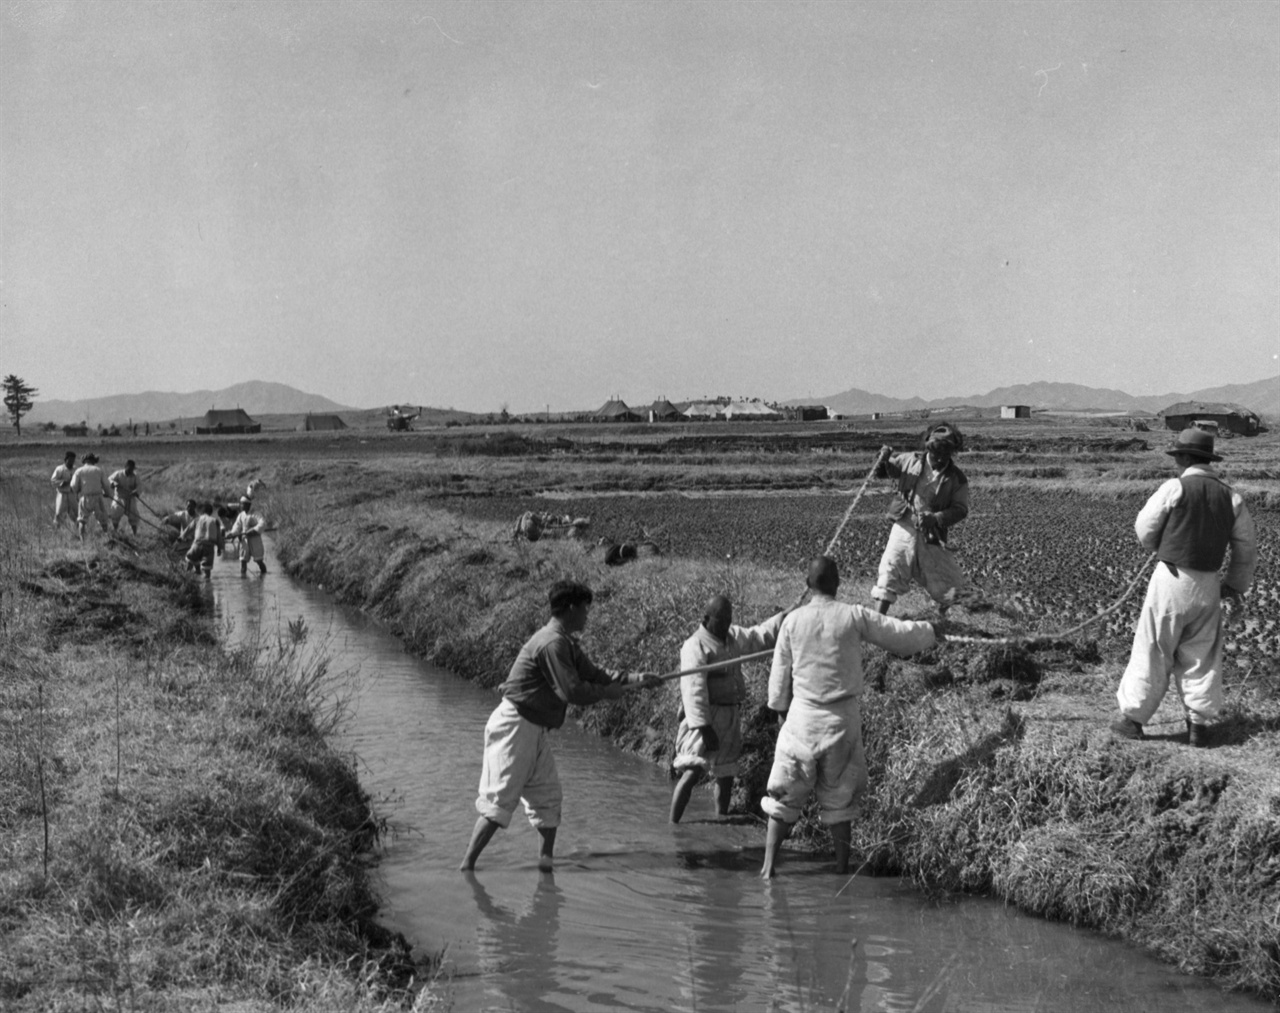 1952. 3. 25. 판문점 부근, 농부들이 수로에서 물을 퍼 올리고 있다.